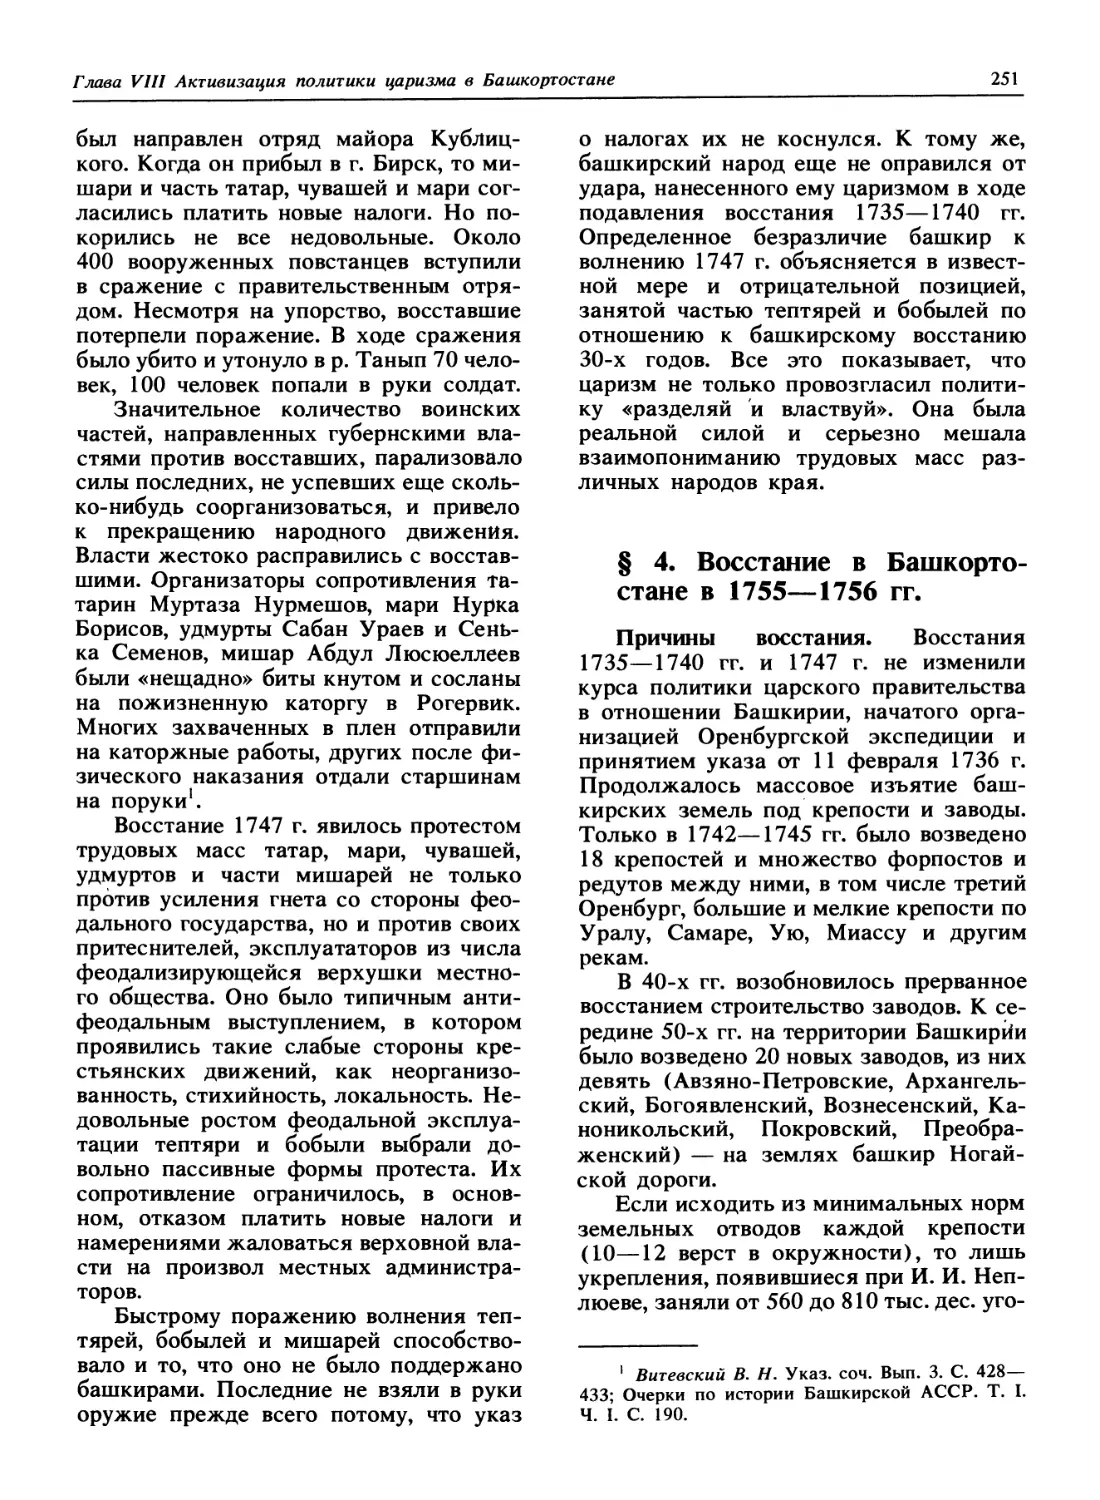 § 4. Восстание в Башкортостане в 1755 - 1756 гг.